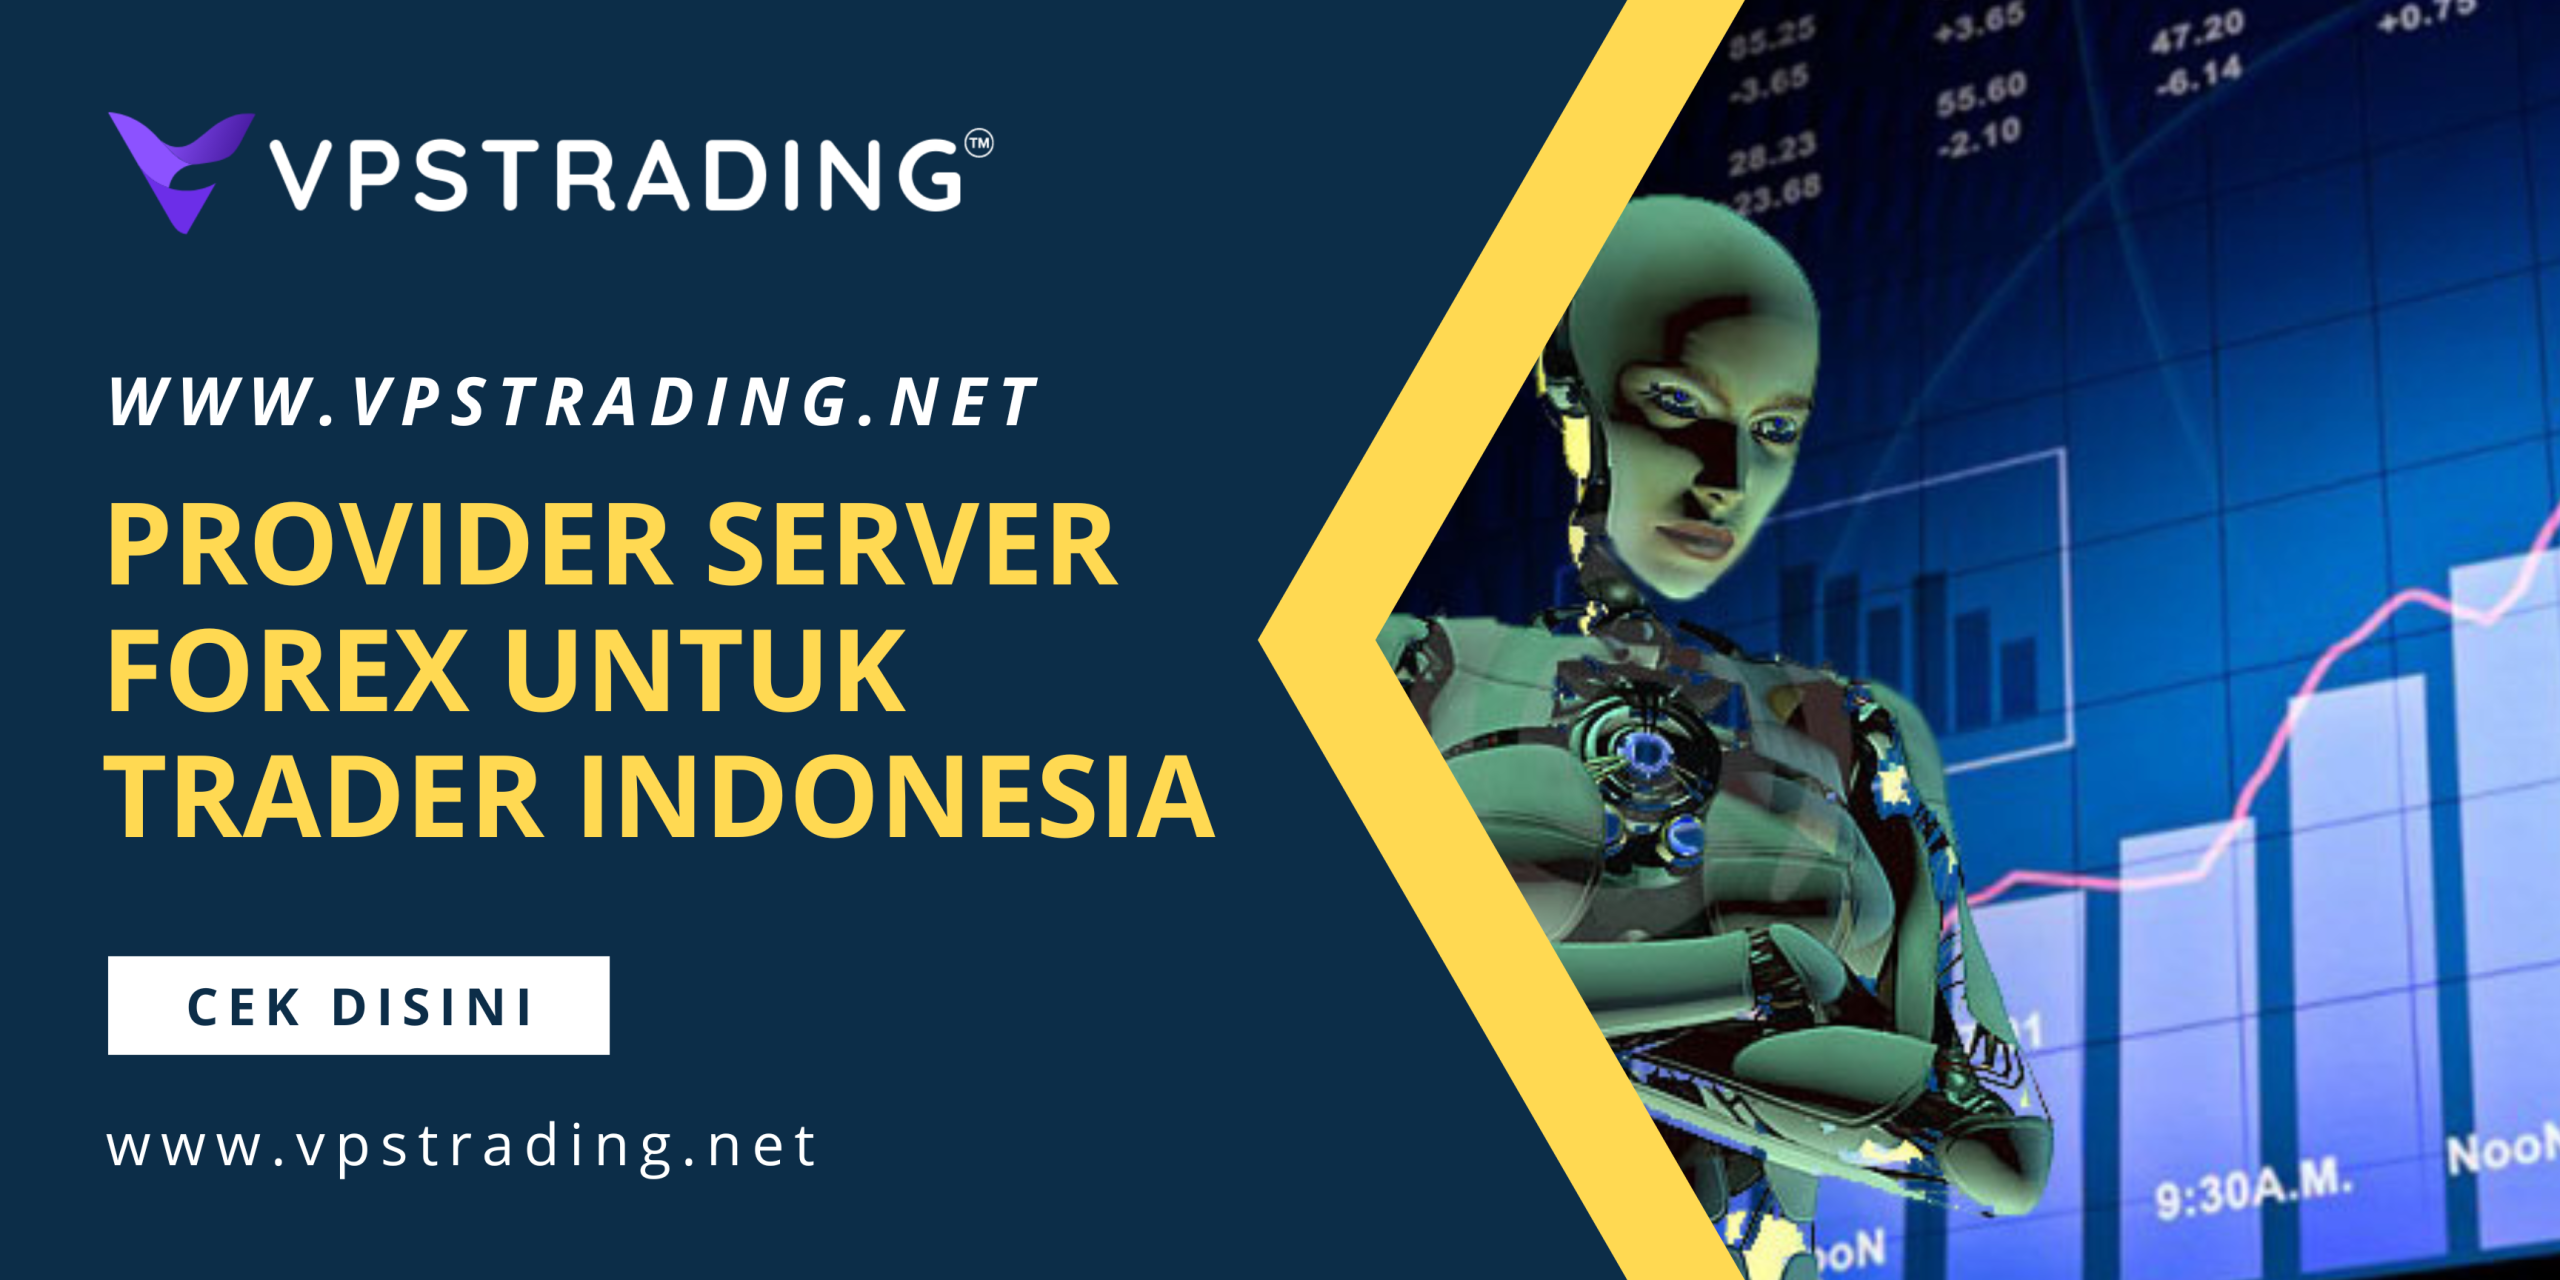 VPSTrading.net - Provider VPS Forex Murah Indonesia